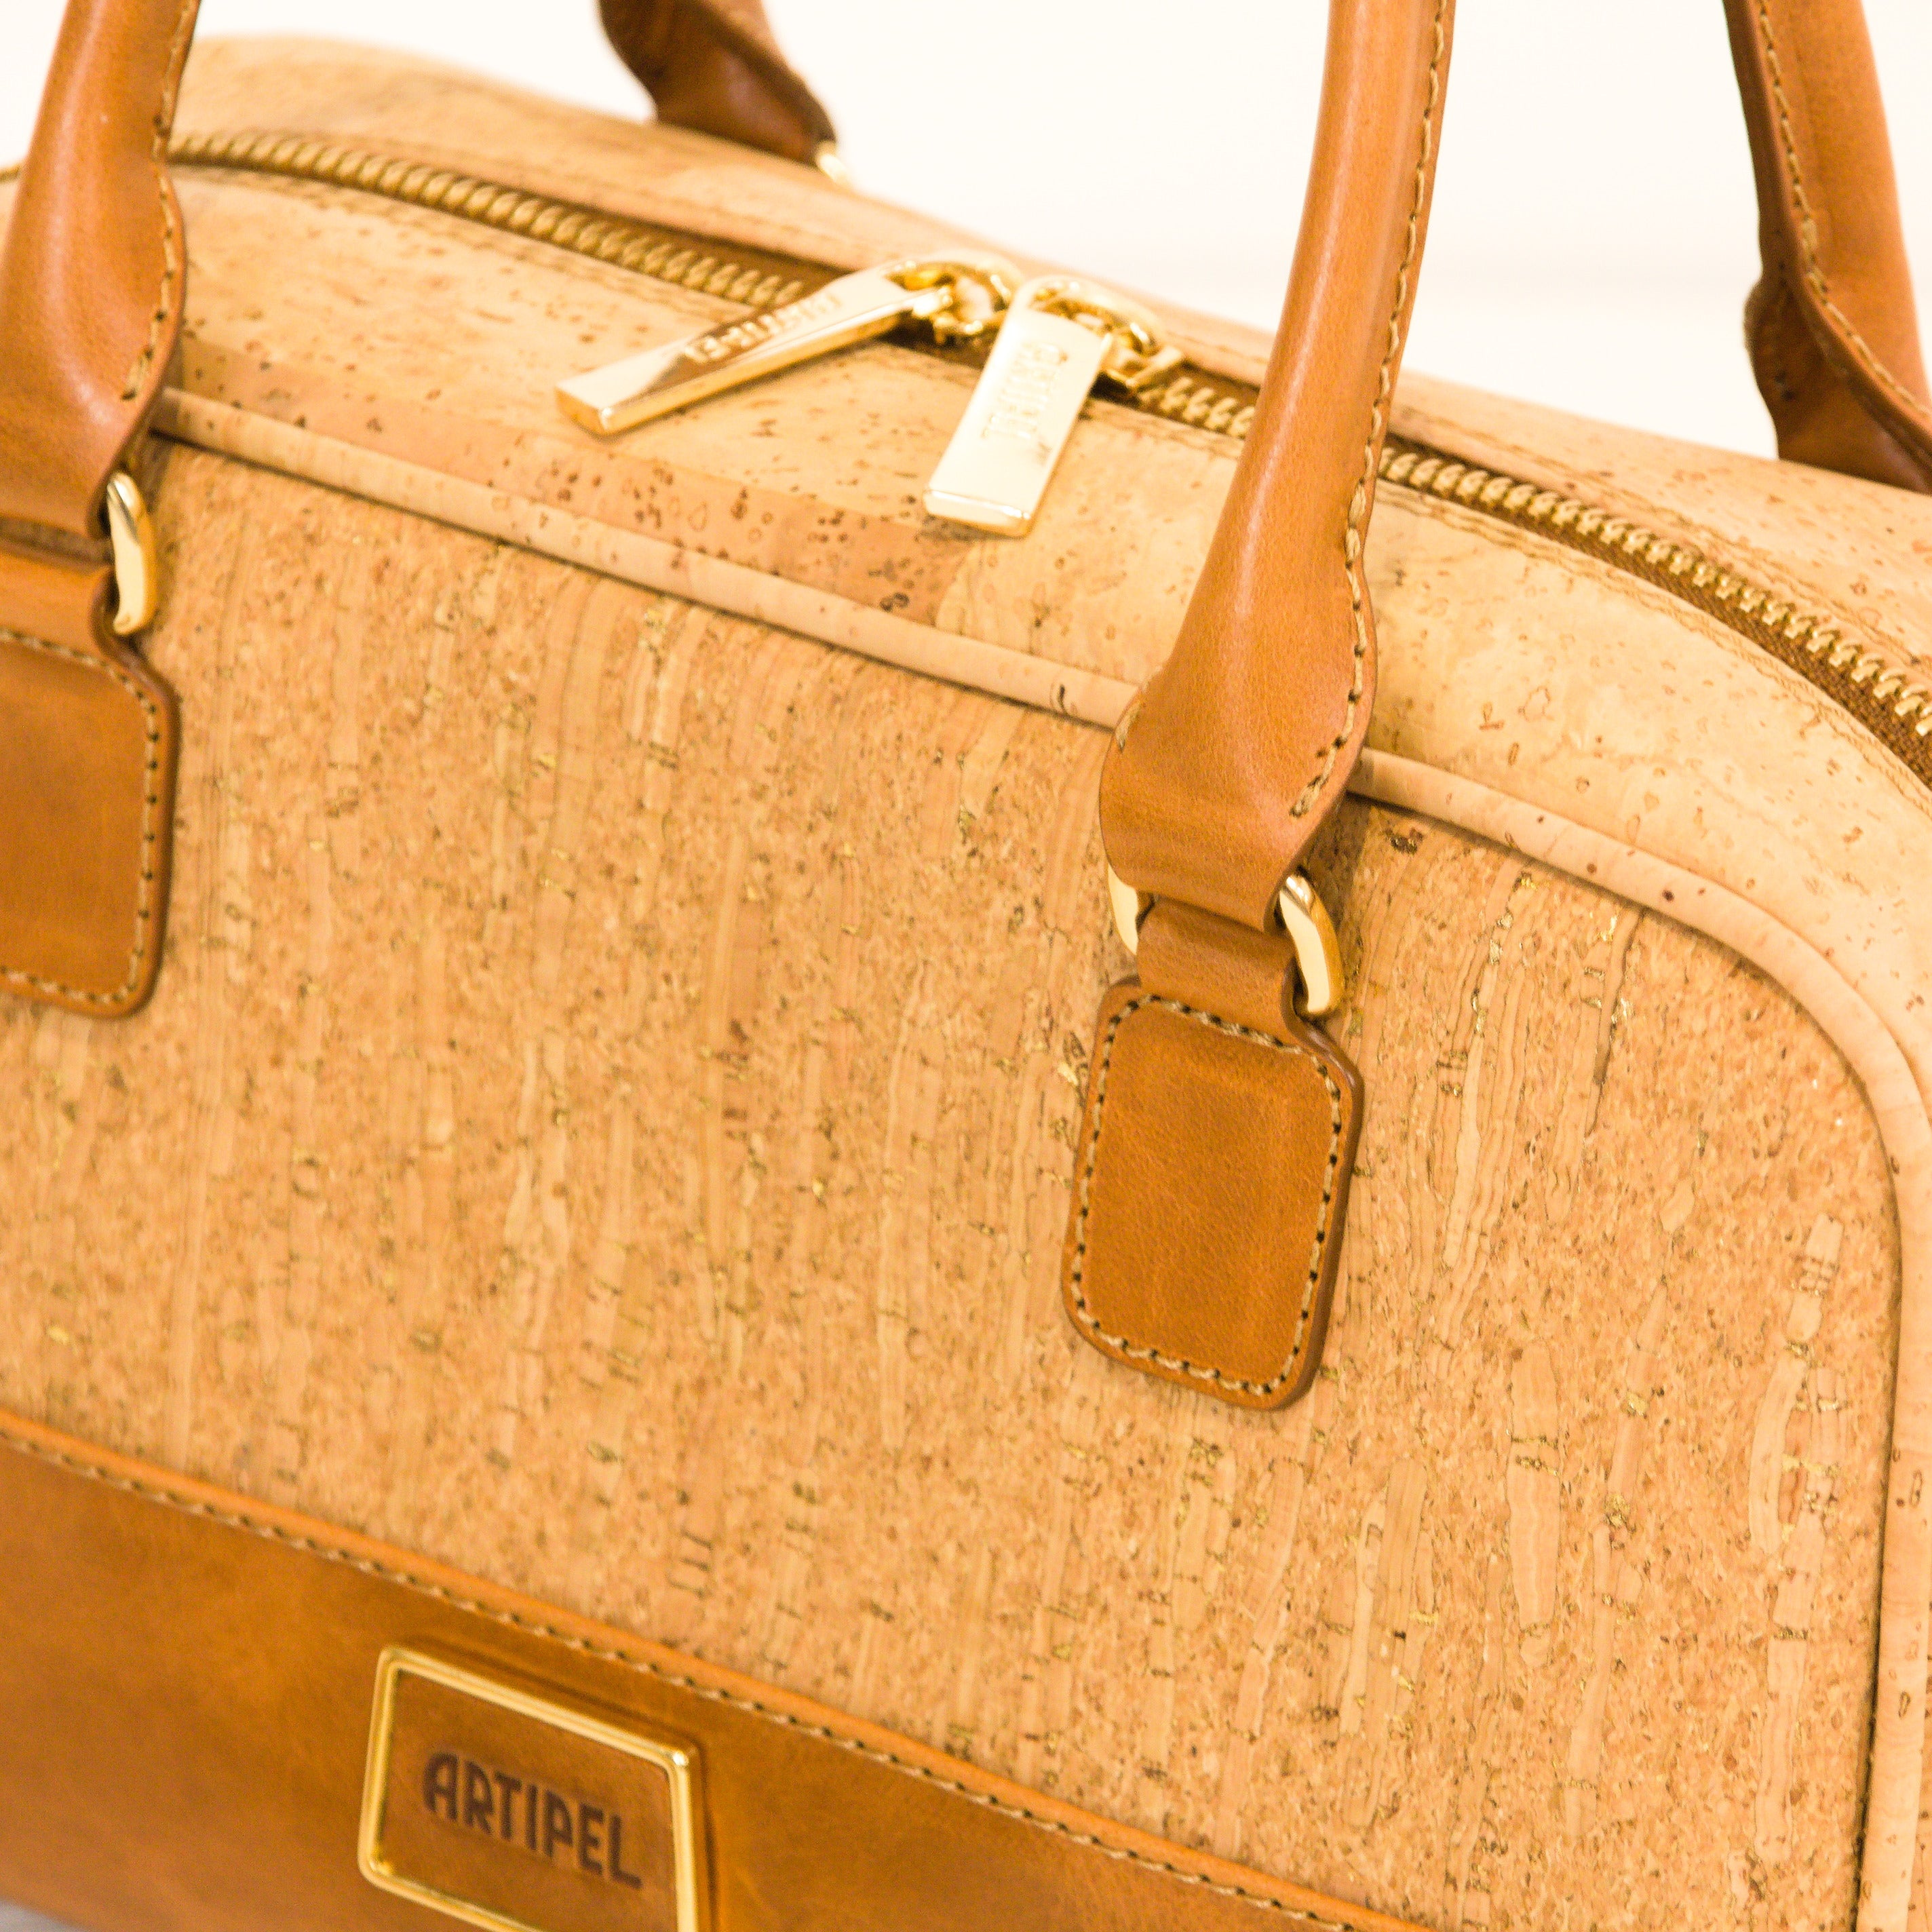 Cork handbag * in 2 sizes * shoulder bag for women * crossbody * shopper * handmade in Portugal